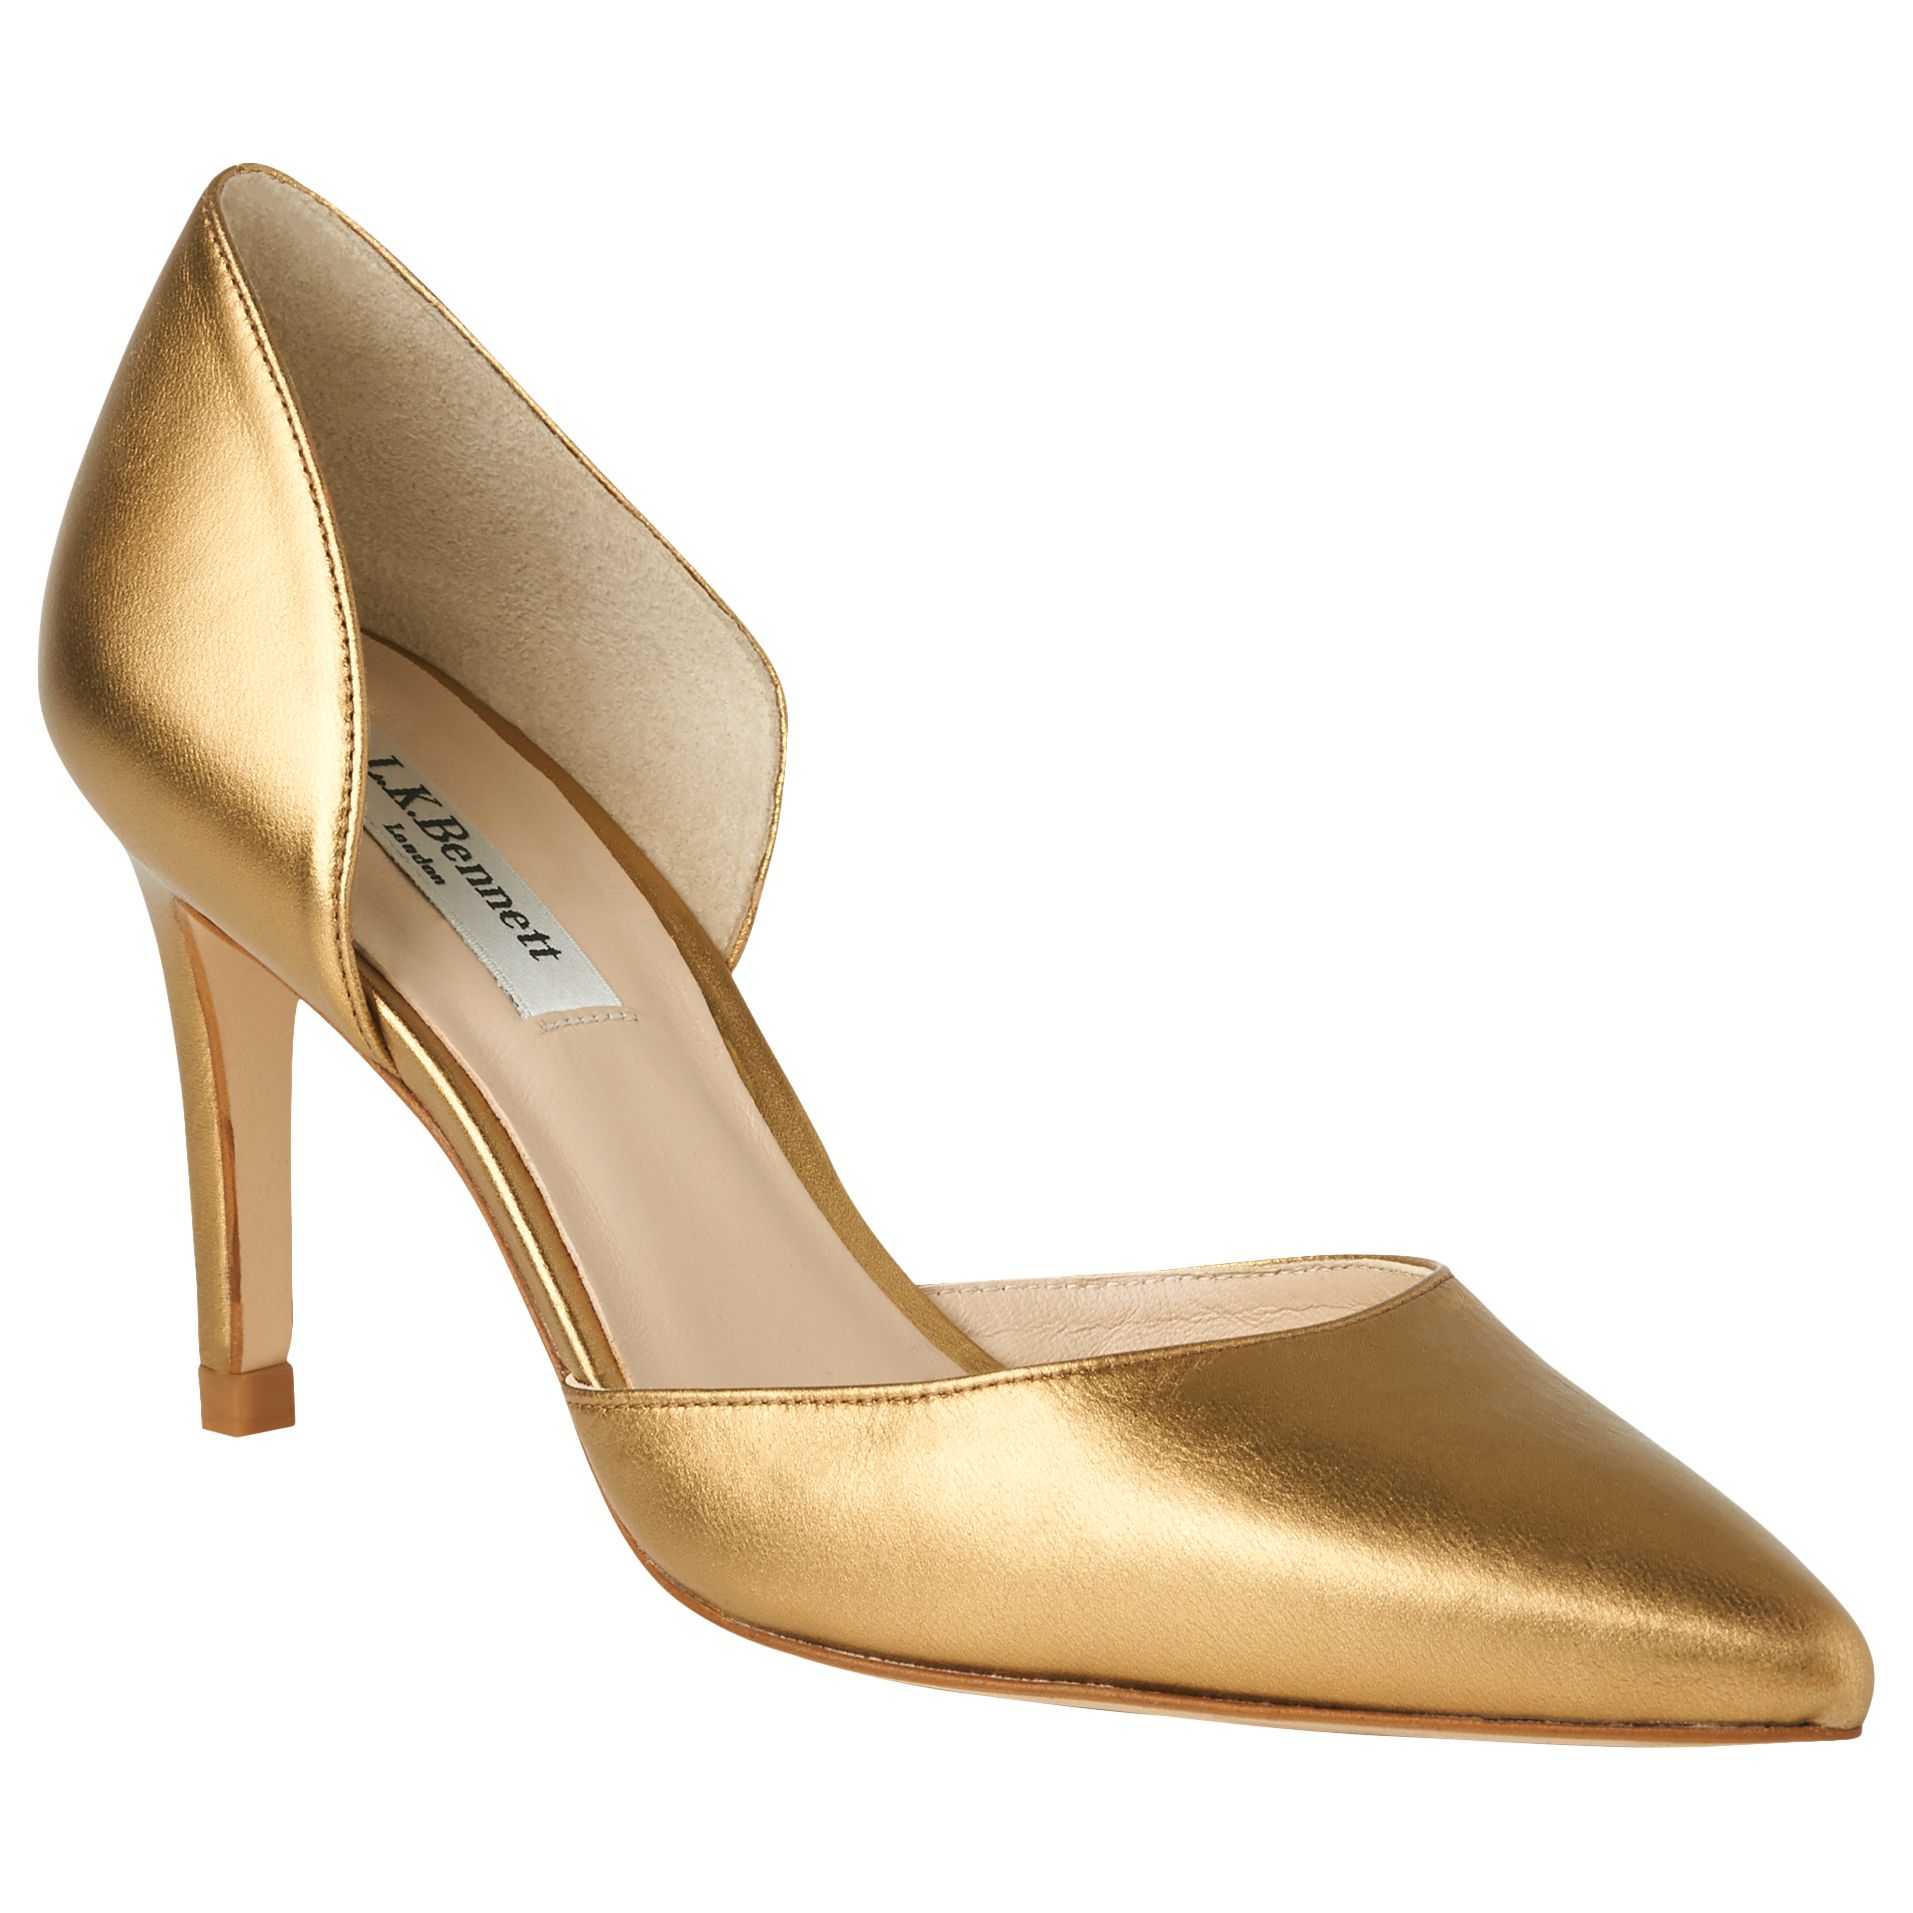 L.K. Bennett Flossie Stiletto Heeled Court Shoes, Bronze, 4